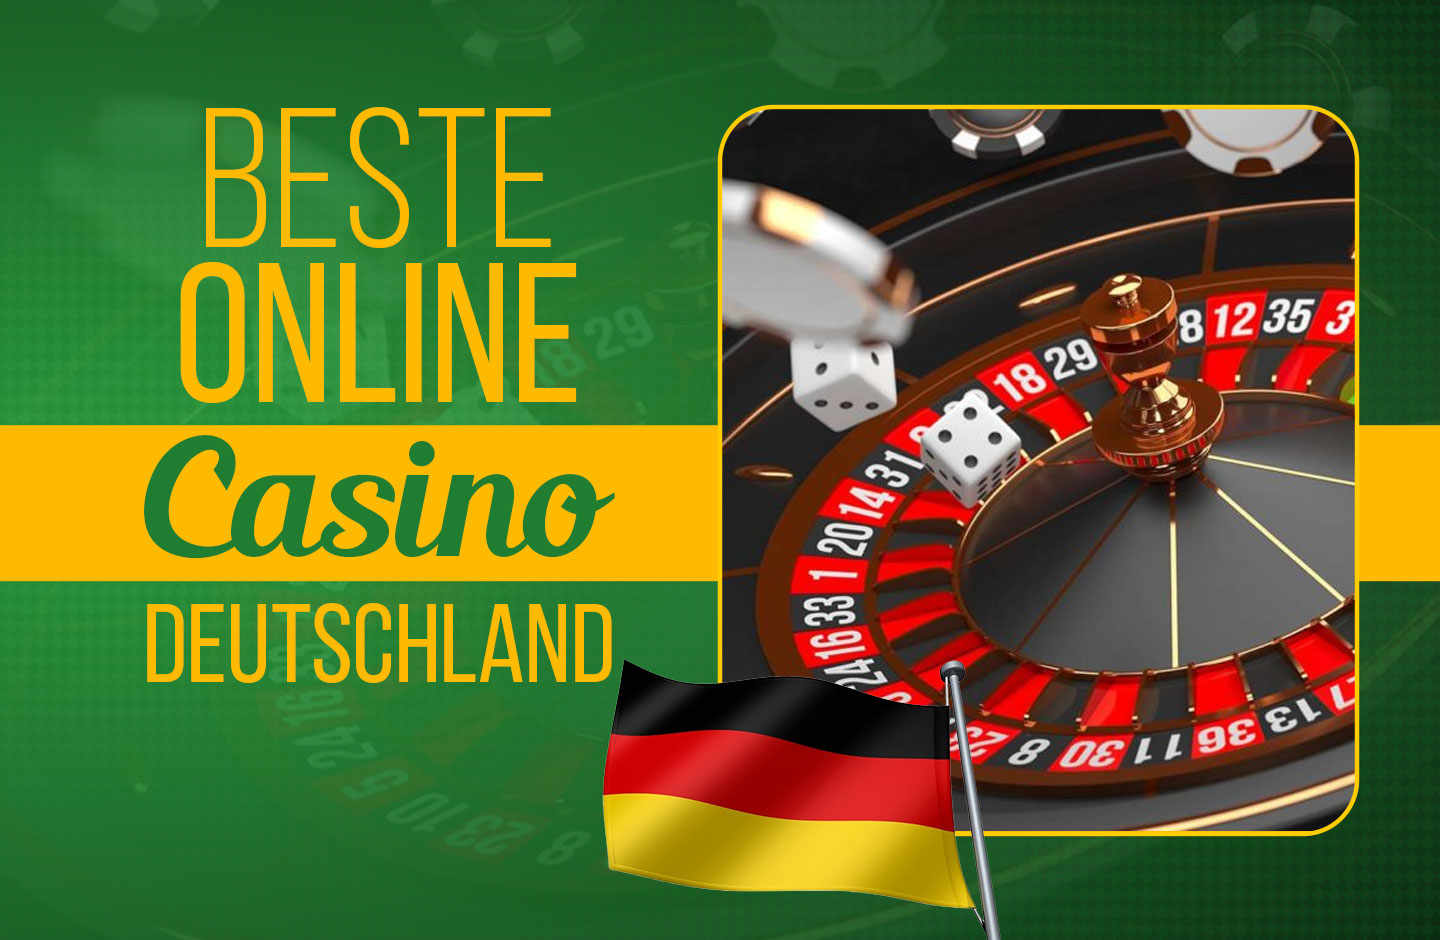 Kurzgeschichte: Die Wahrheit über Seriöses Online Casino Deutschland